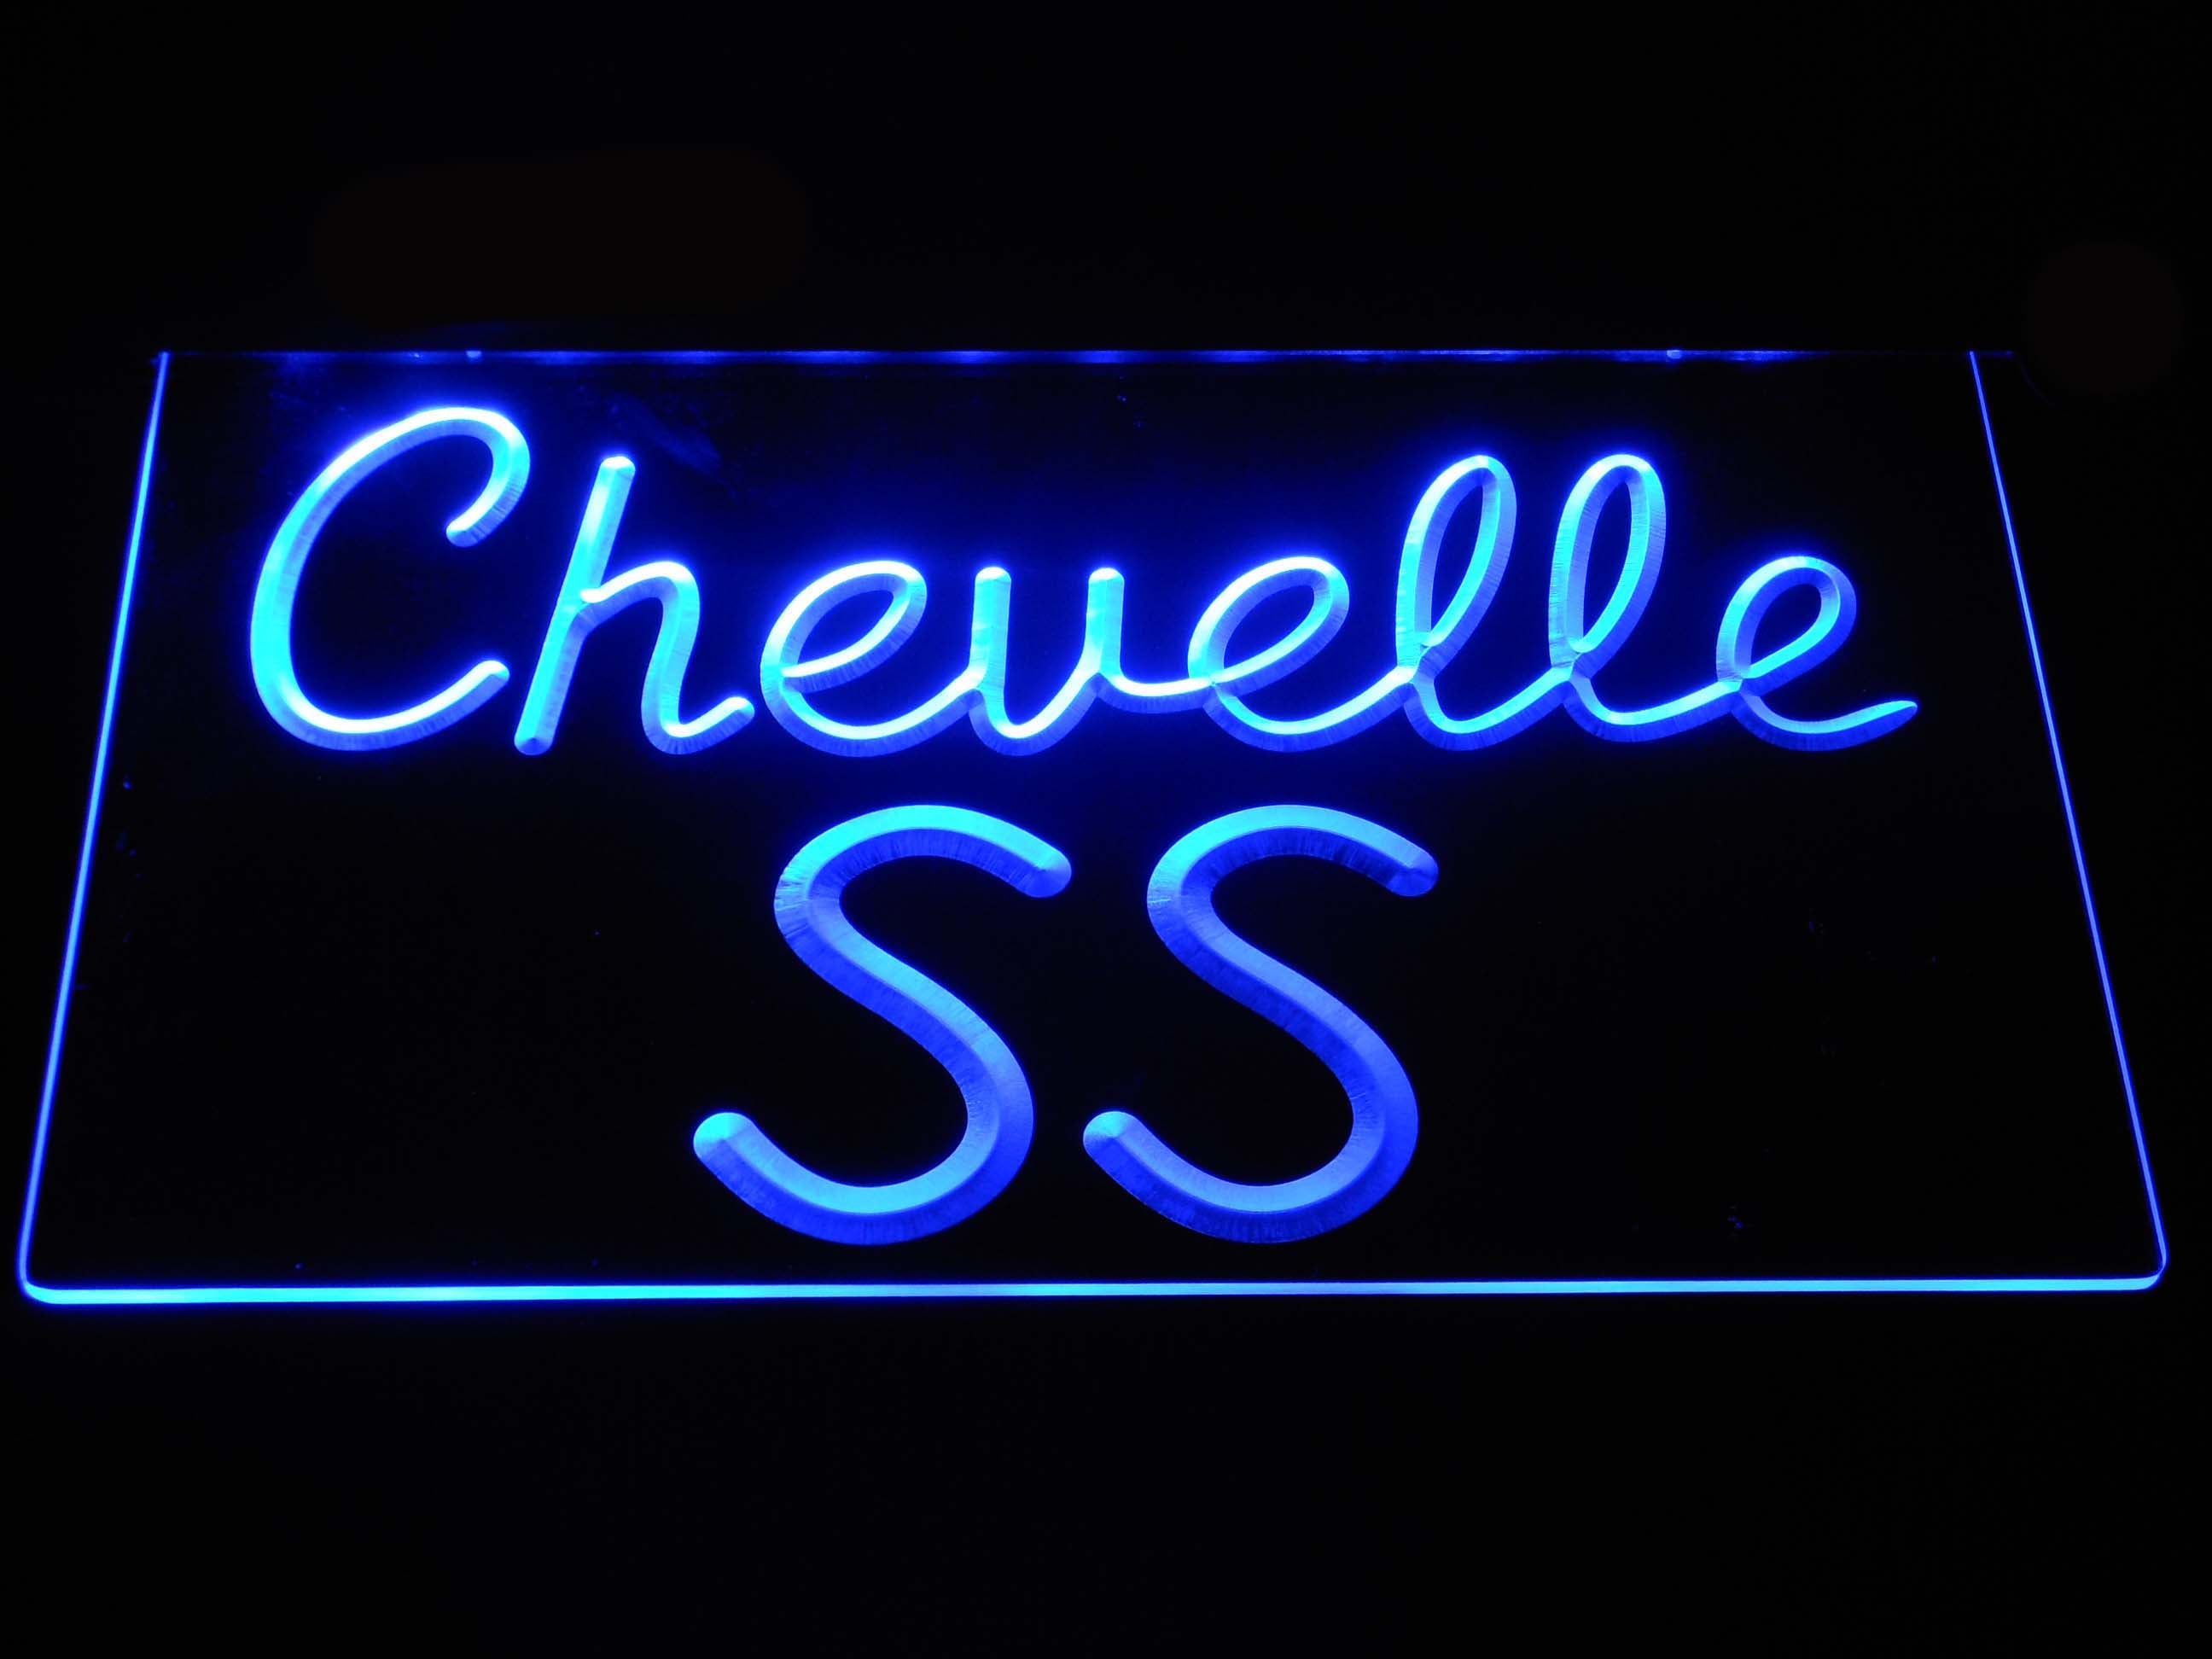 Chevrolet Chevelle SS Neon Light LED Sign